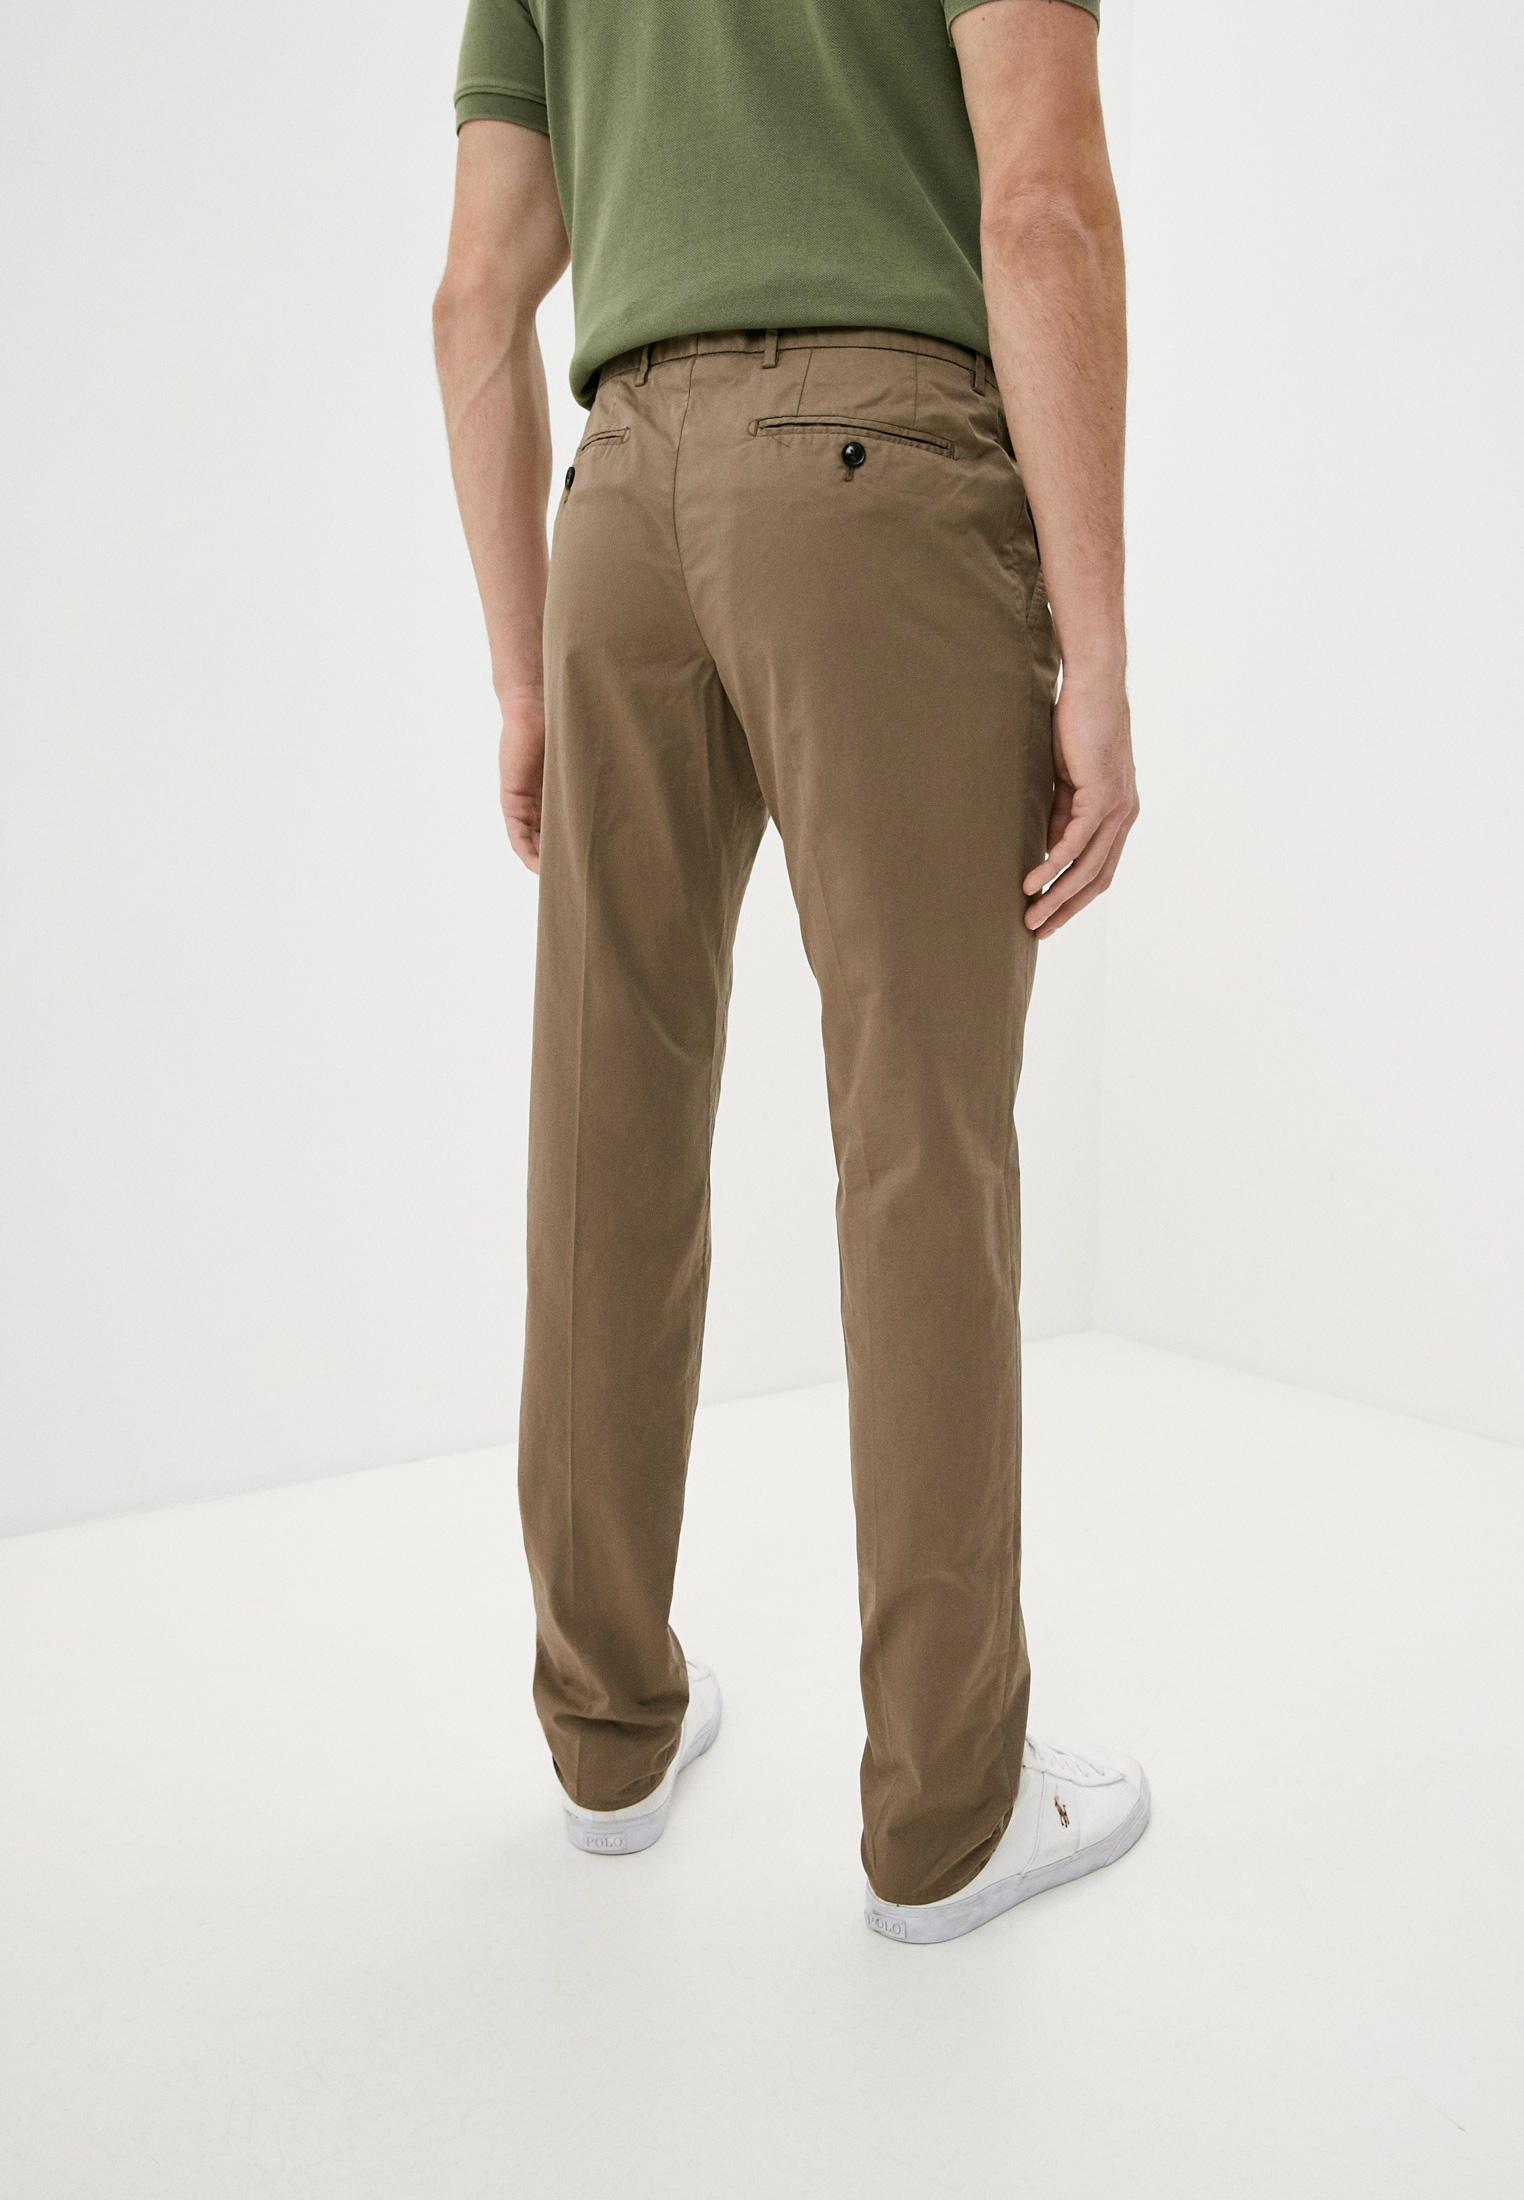 Мужские повседневные брюки Trussardi (Труссарди) 32P00106-1T002853: изображение 4